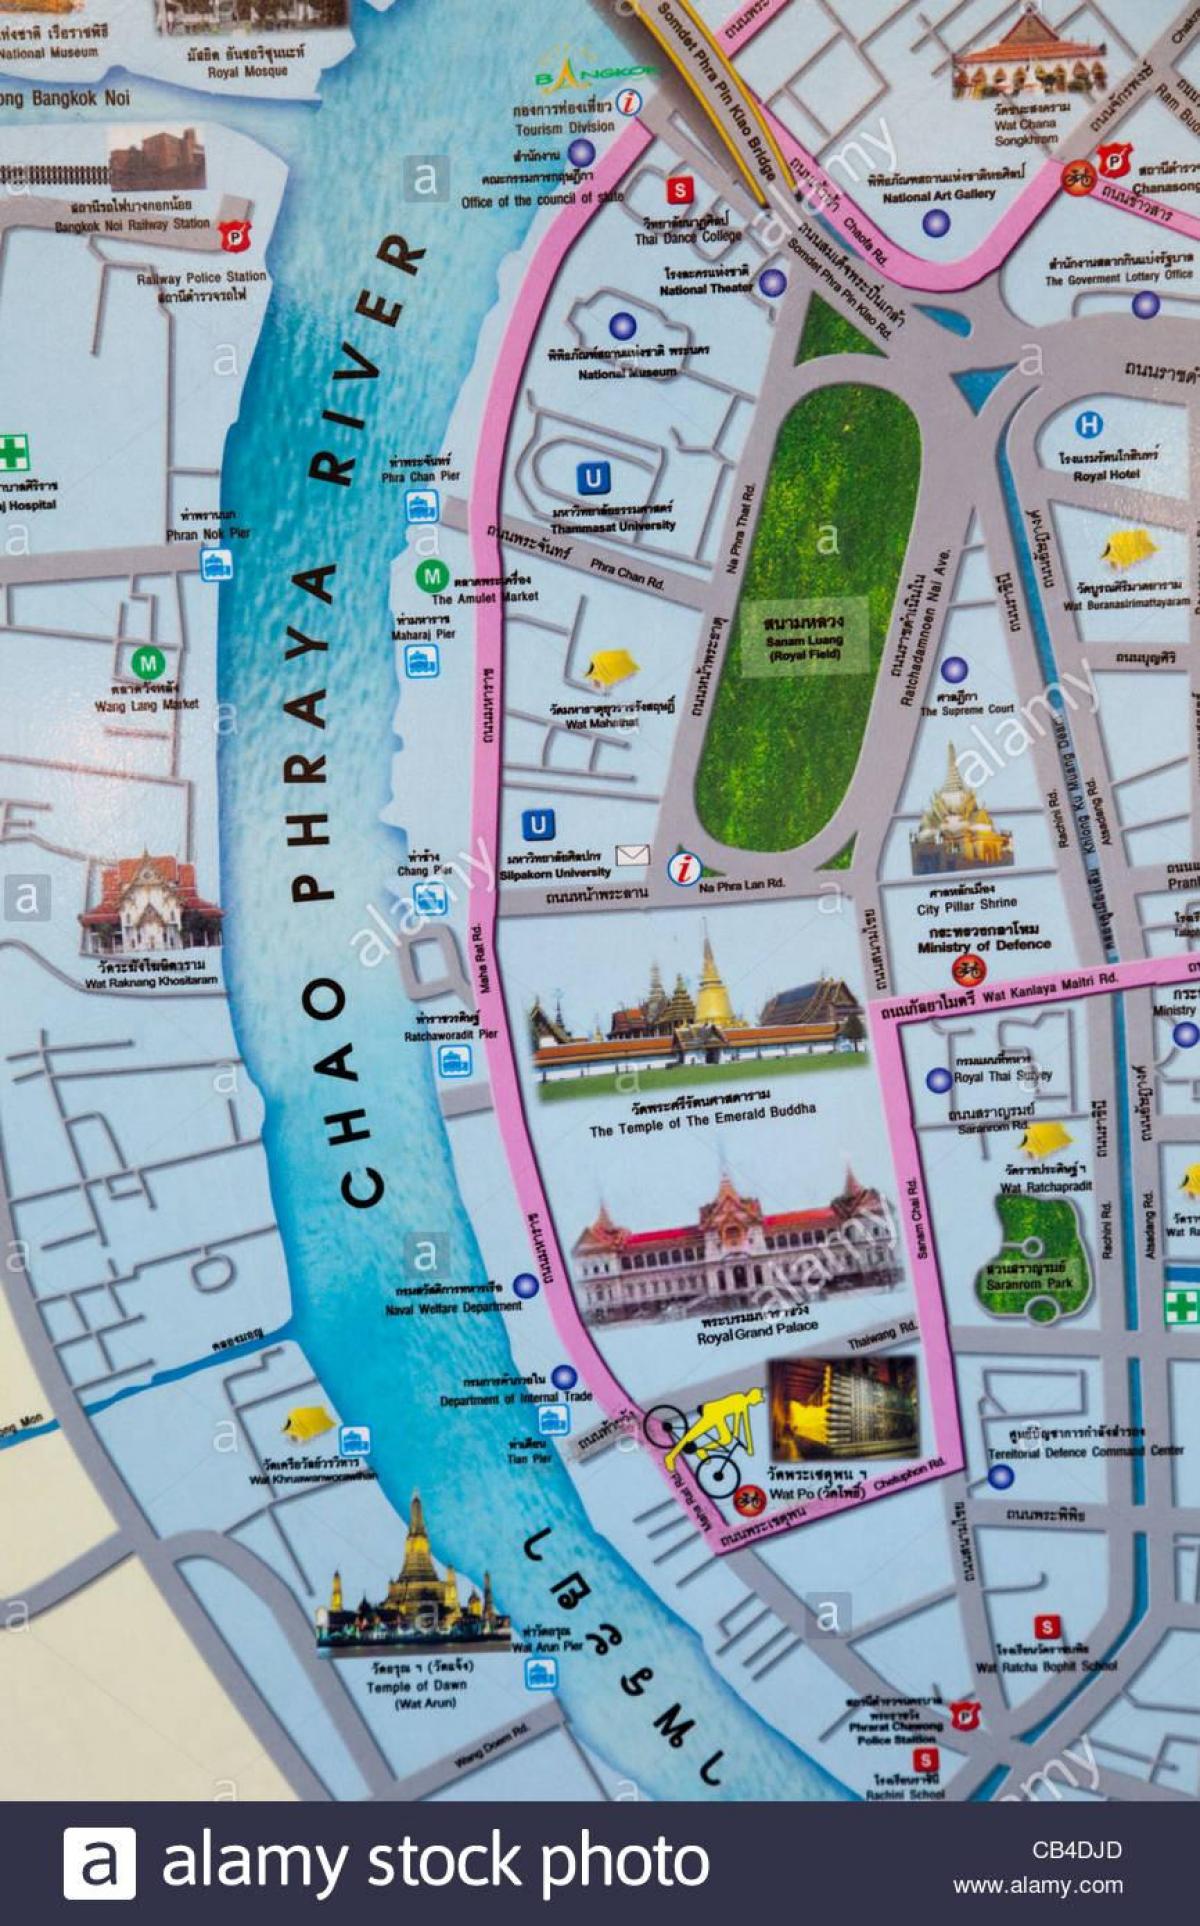 방콕 지도와 함께 관광 명소